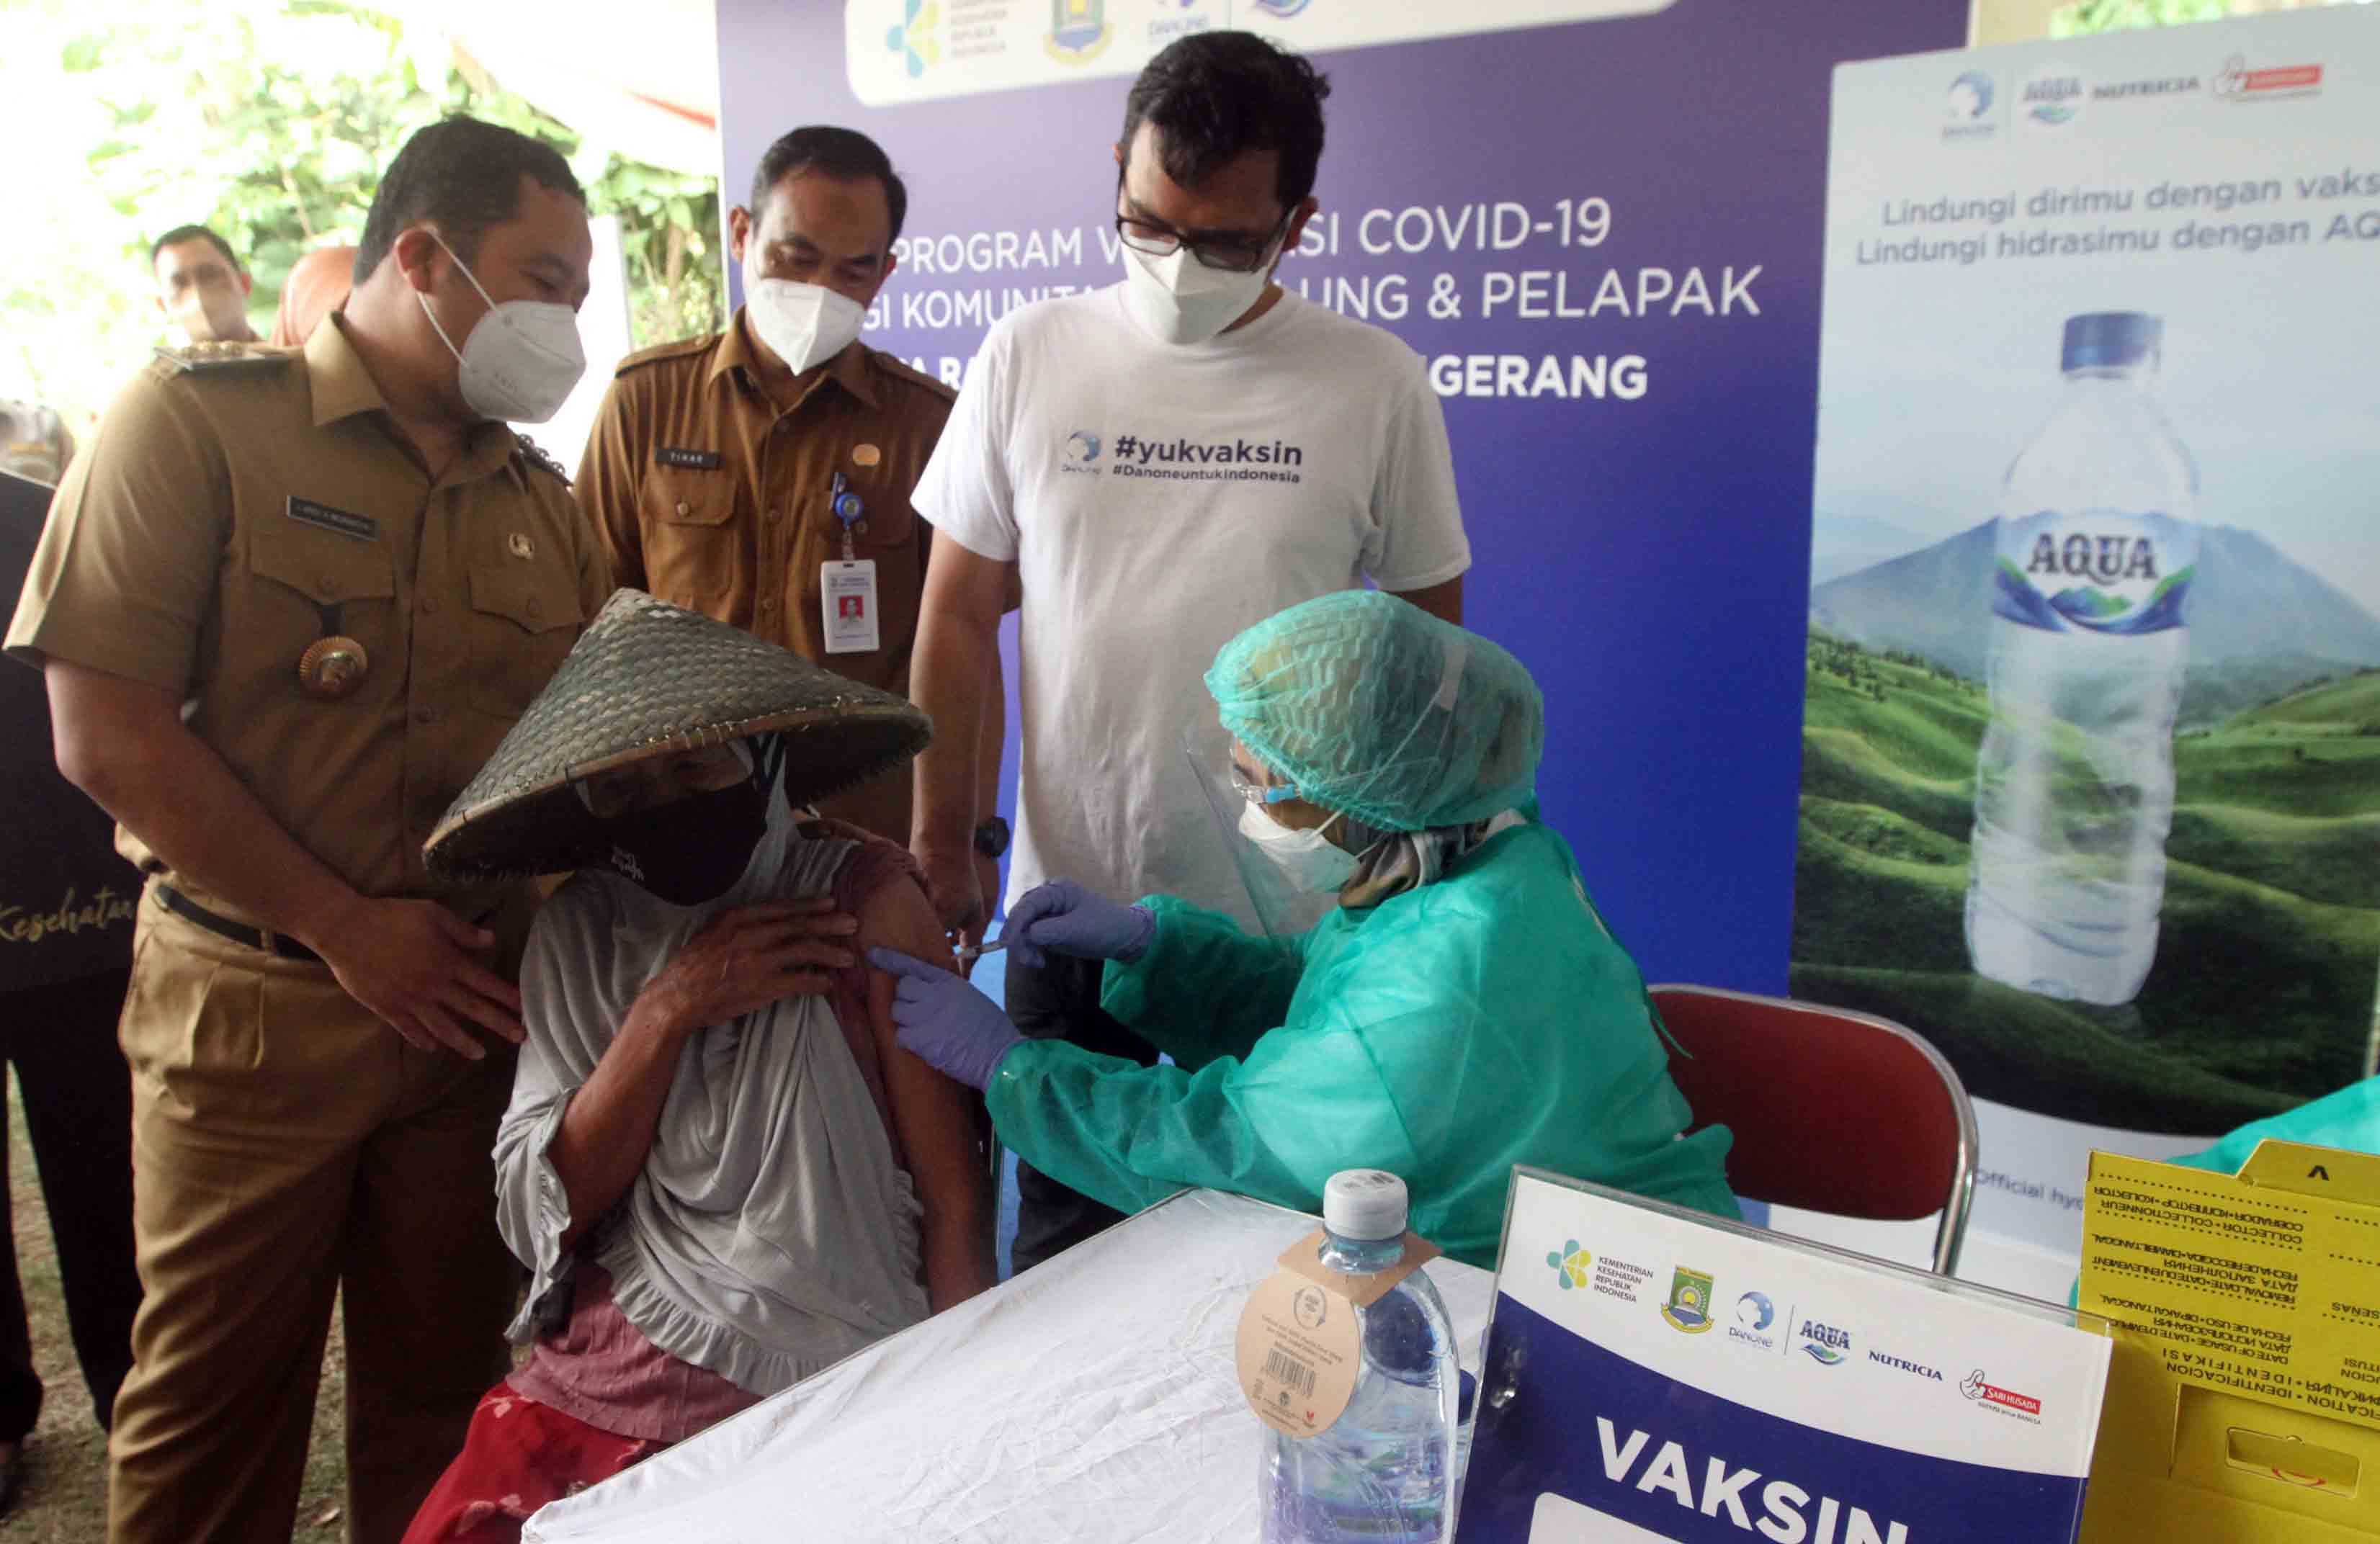 Pemerintah Kota Tangerang bersama Danone Indonesia Jemput Bola Vaksinasi Covid-19 Pemulung dan Pelapak 1